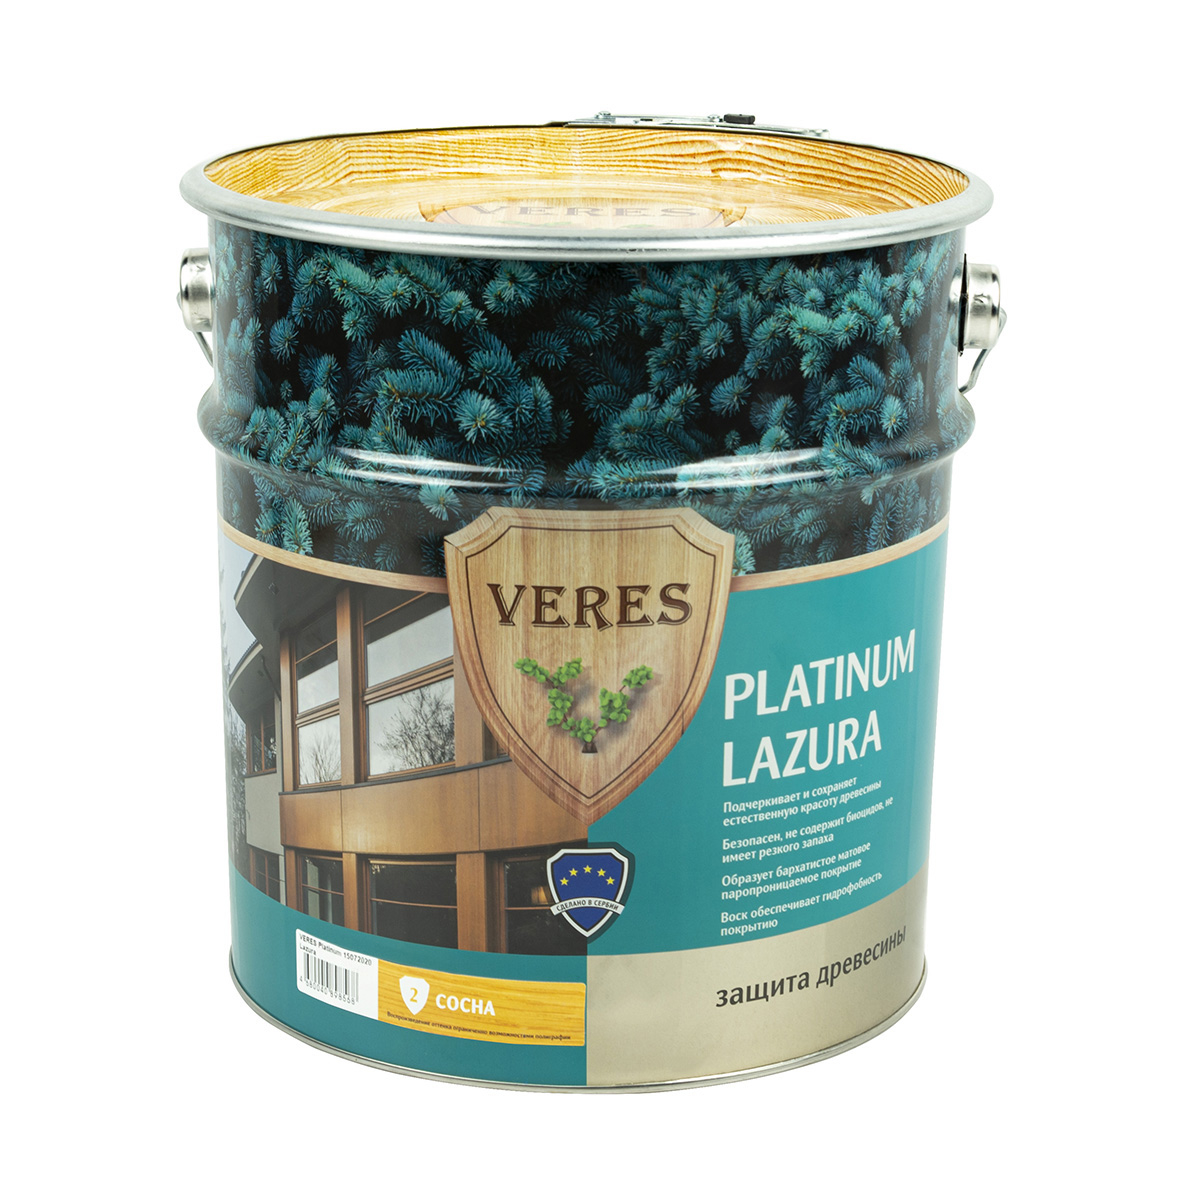 Пропитка Veres platinum lazura № 2 сосна 9 л